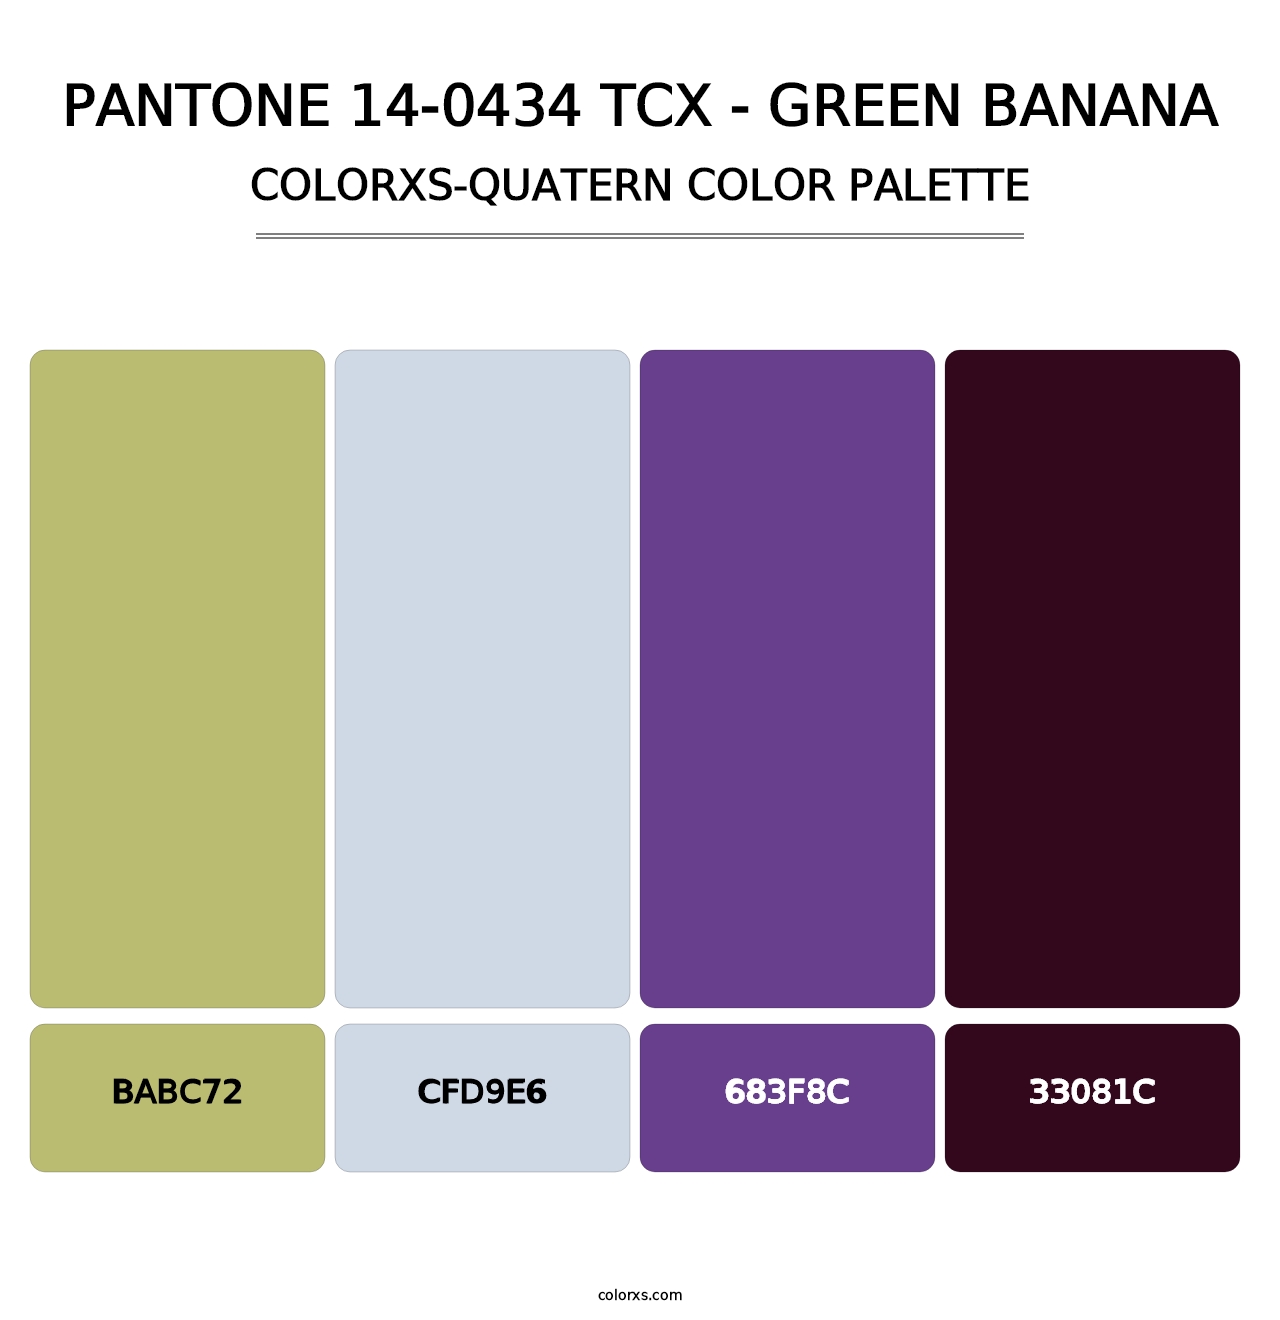 PANTONE 14-0434 TCX - Green Banana - Colorxs Quatern Palette